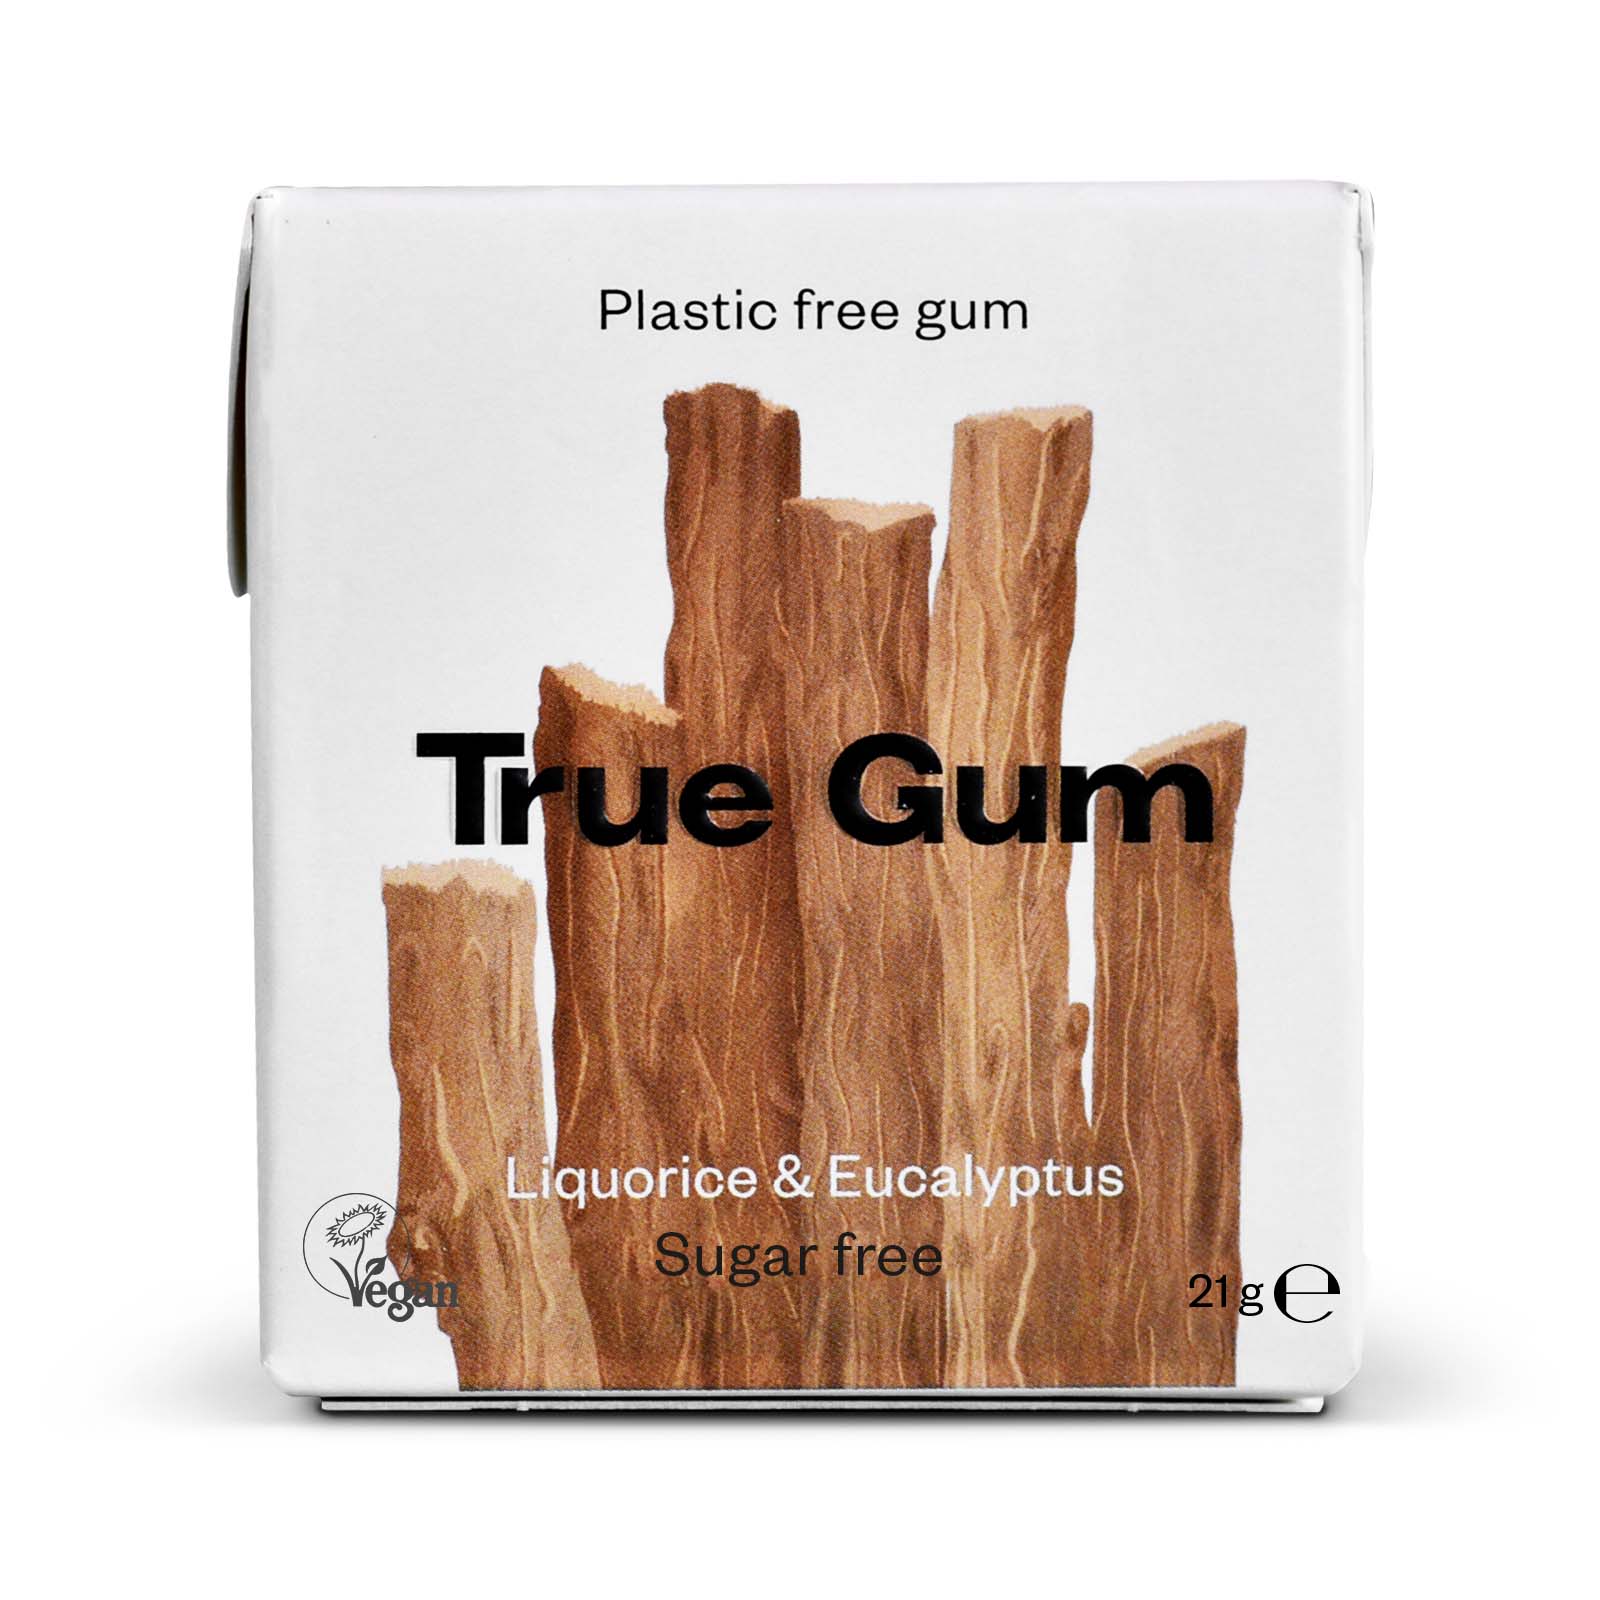 True Gum Lakritsi-Eukalyptus luonnollinen ksylitolipurukumi 21g